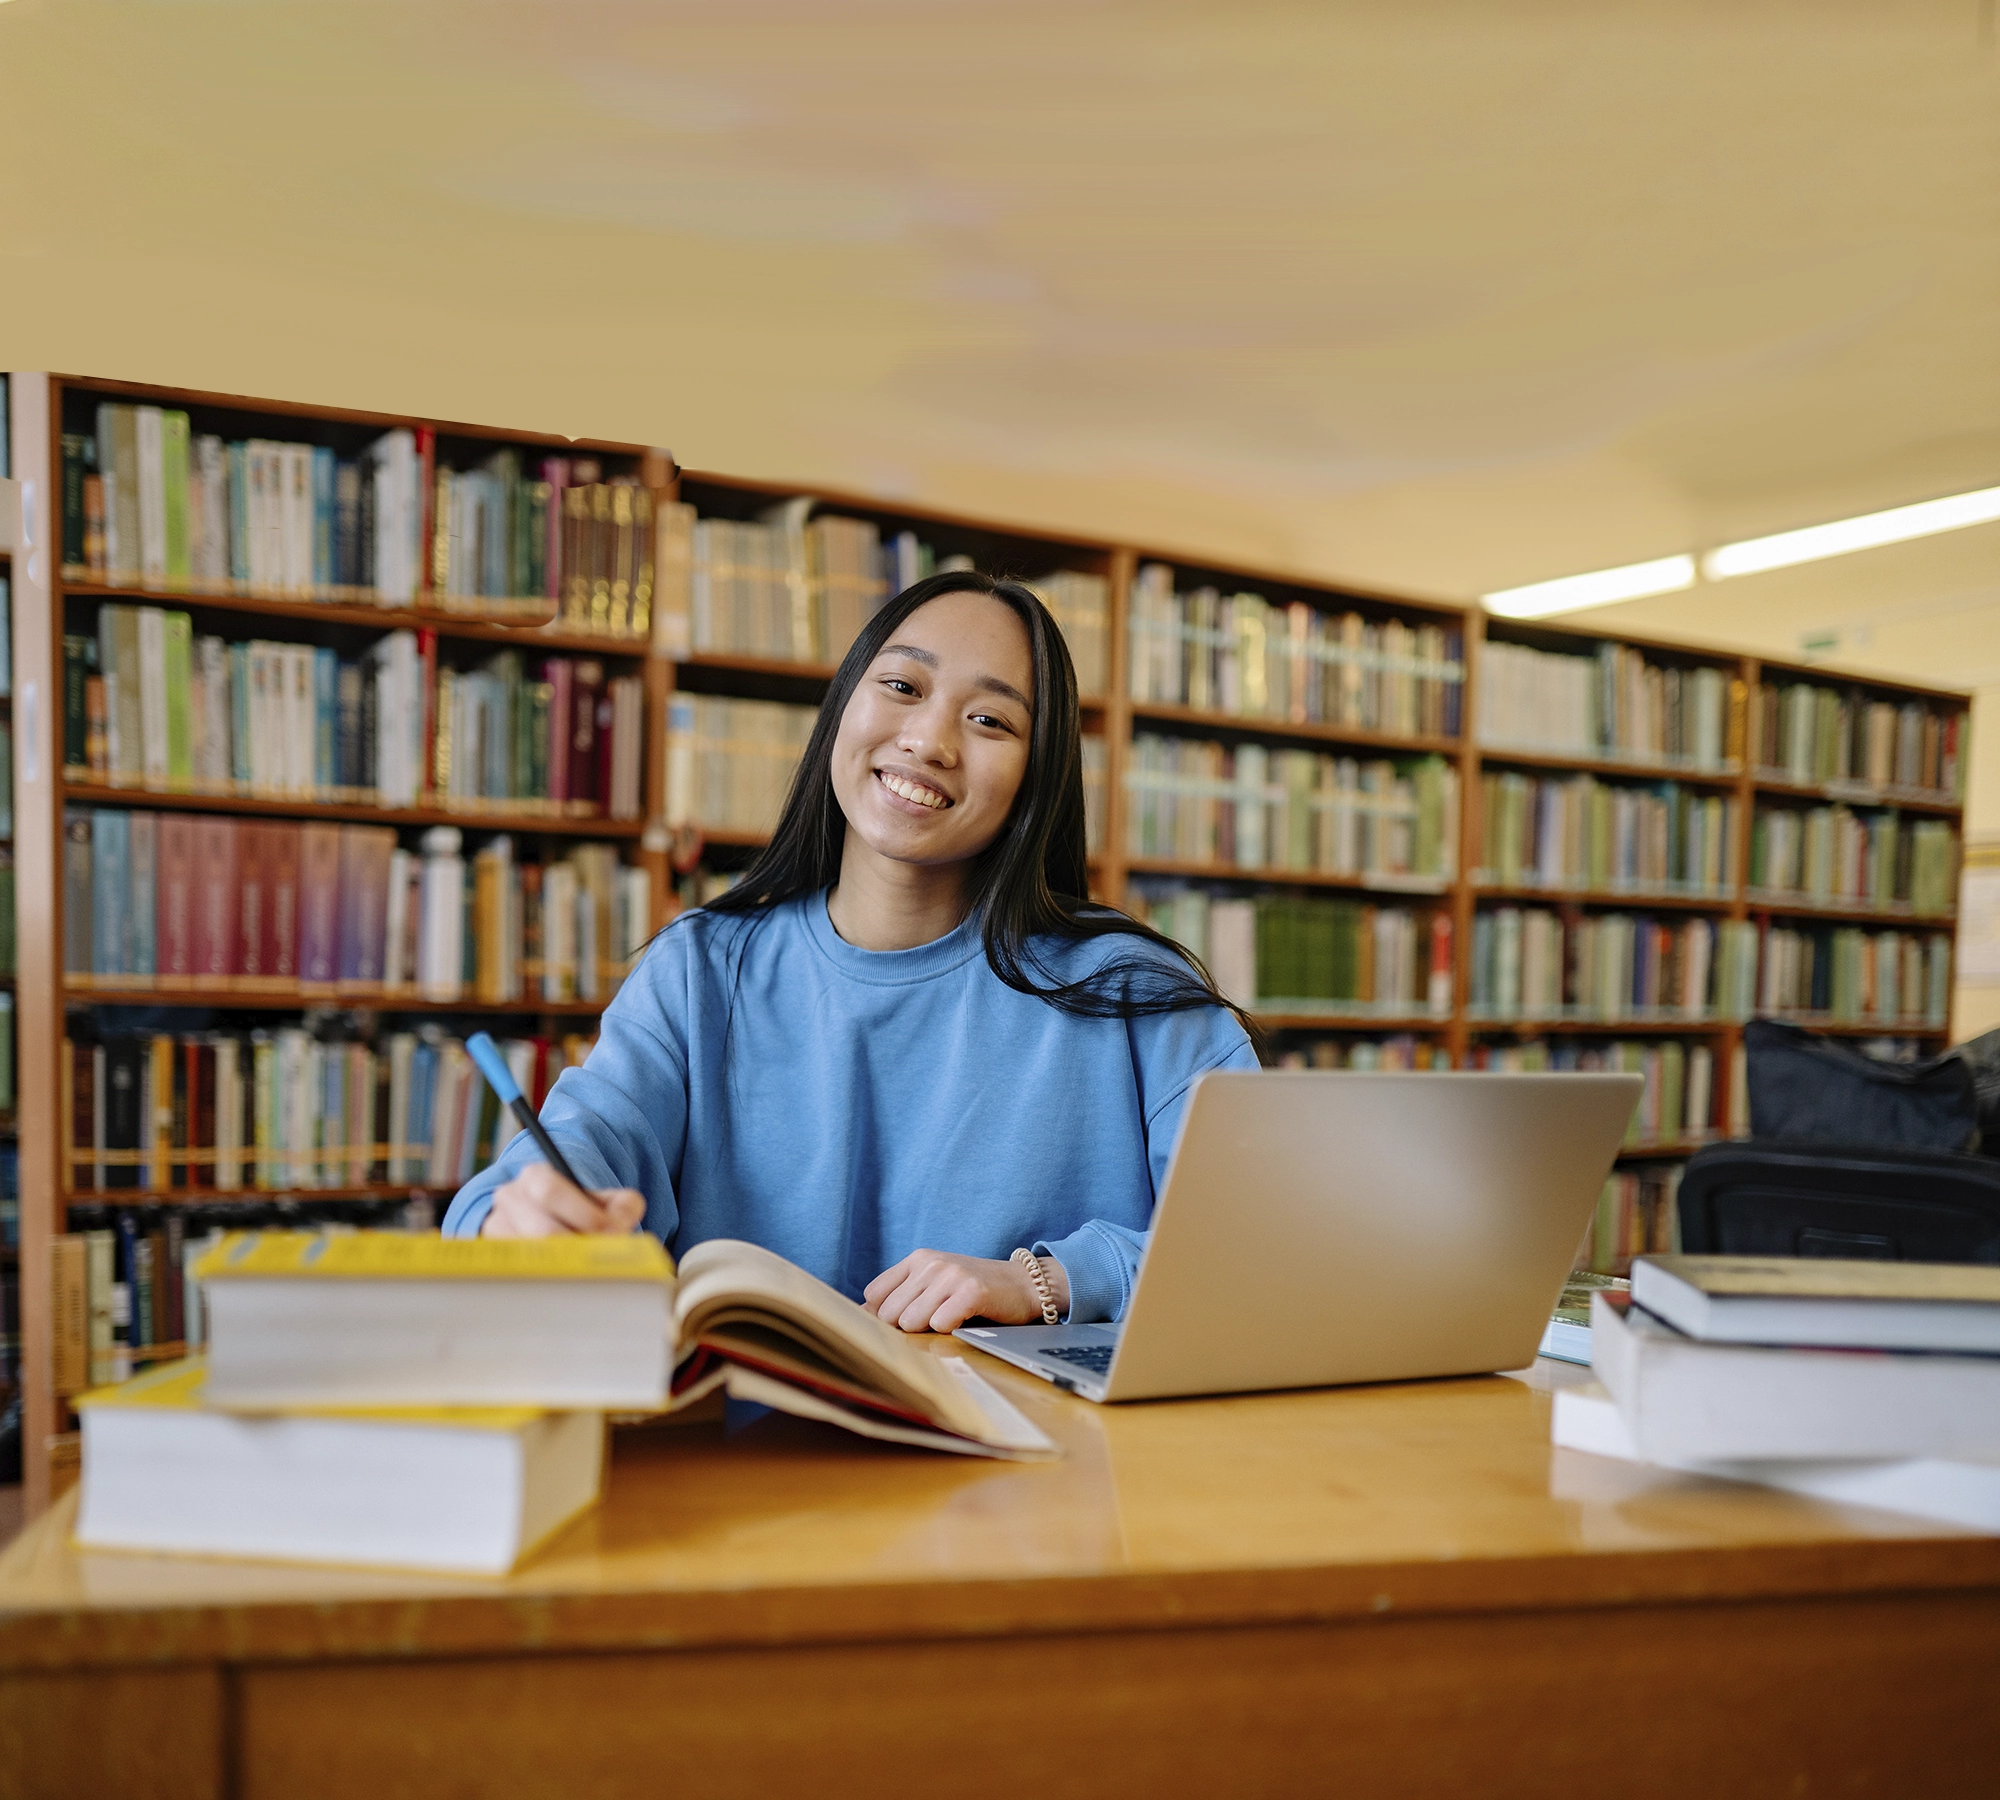 Dans une bibliothèque, posée à un bureau, une jeune femme aux cheveux bruns étudie avec pleins de livres et un ordinateur portable.